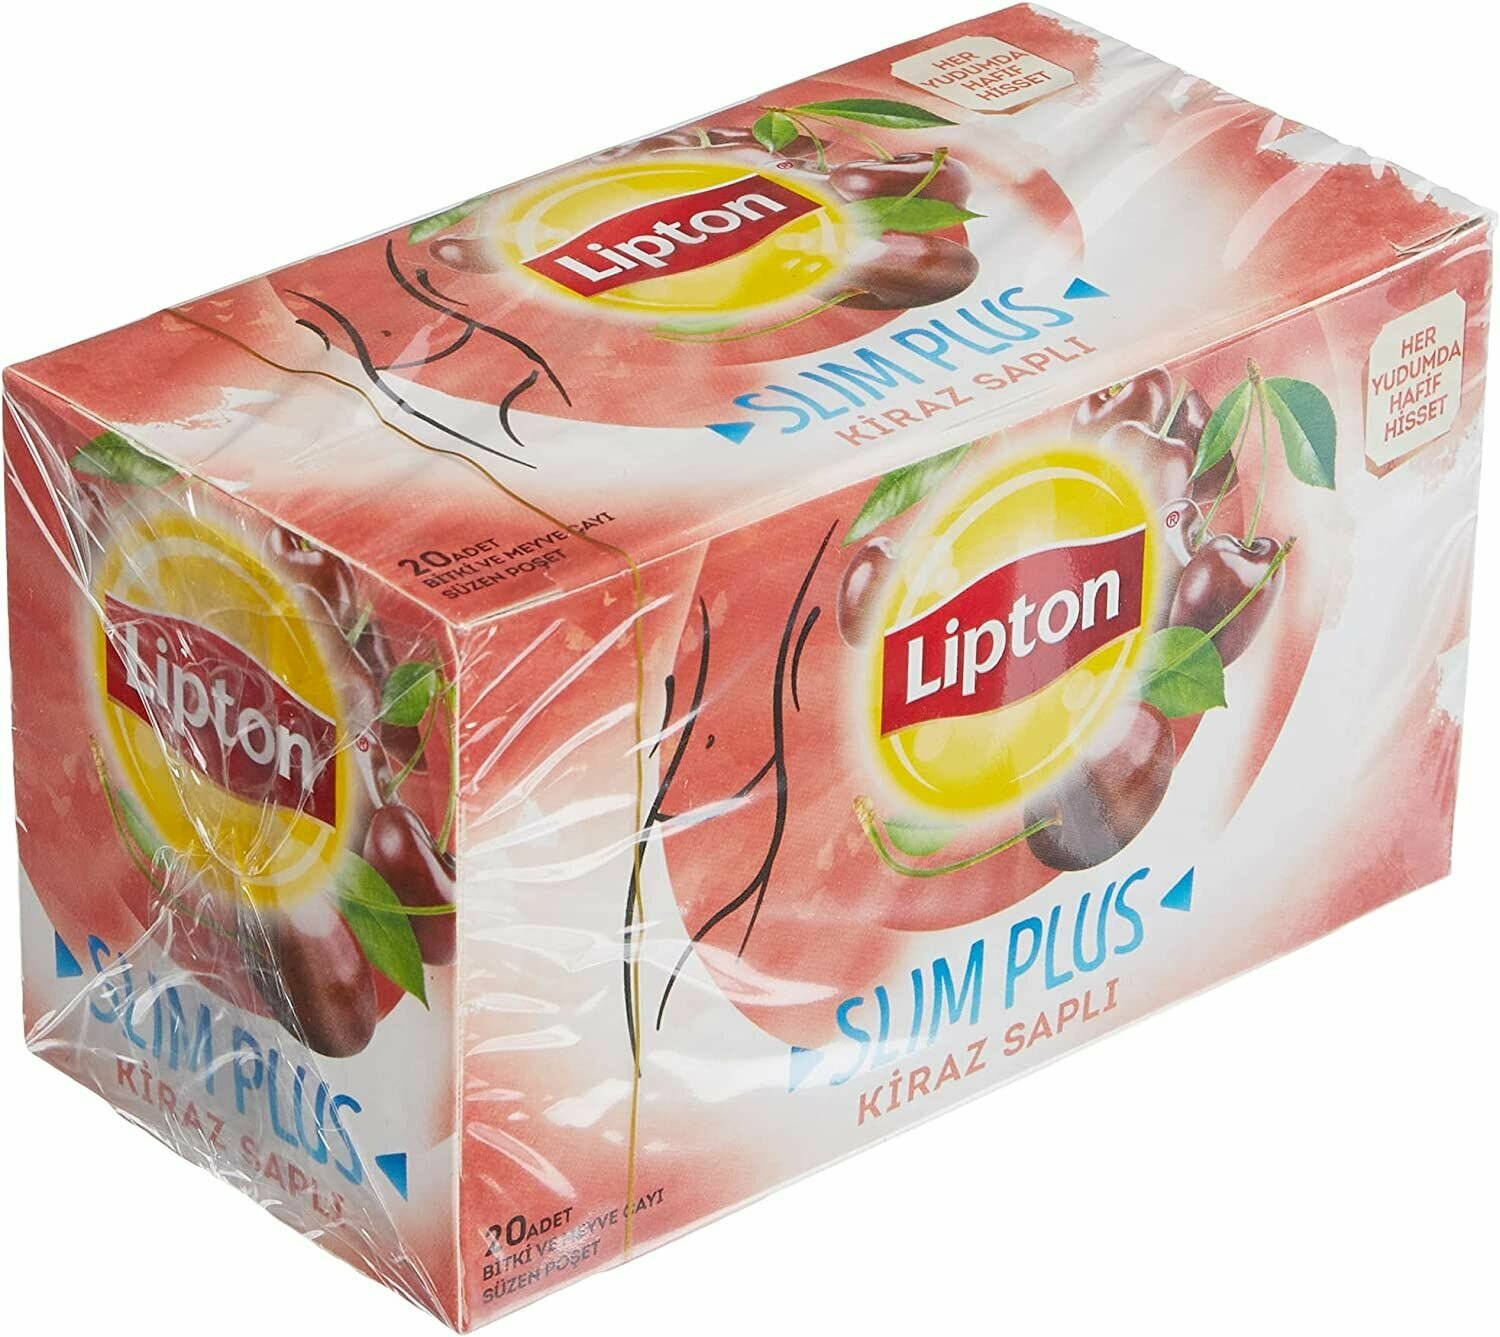 Lipton Slim Plus Вишневый чай в пакетиках (Липтон Слим плюс Kiraz Sapli)